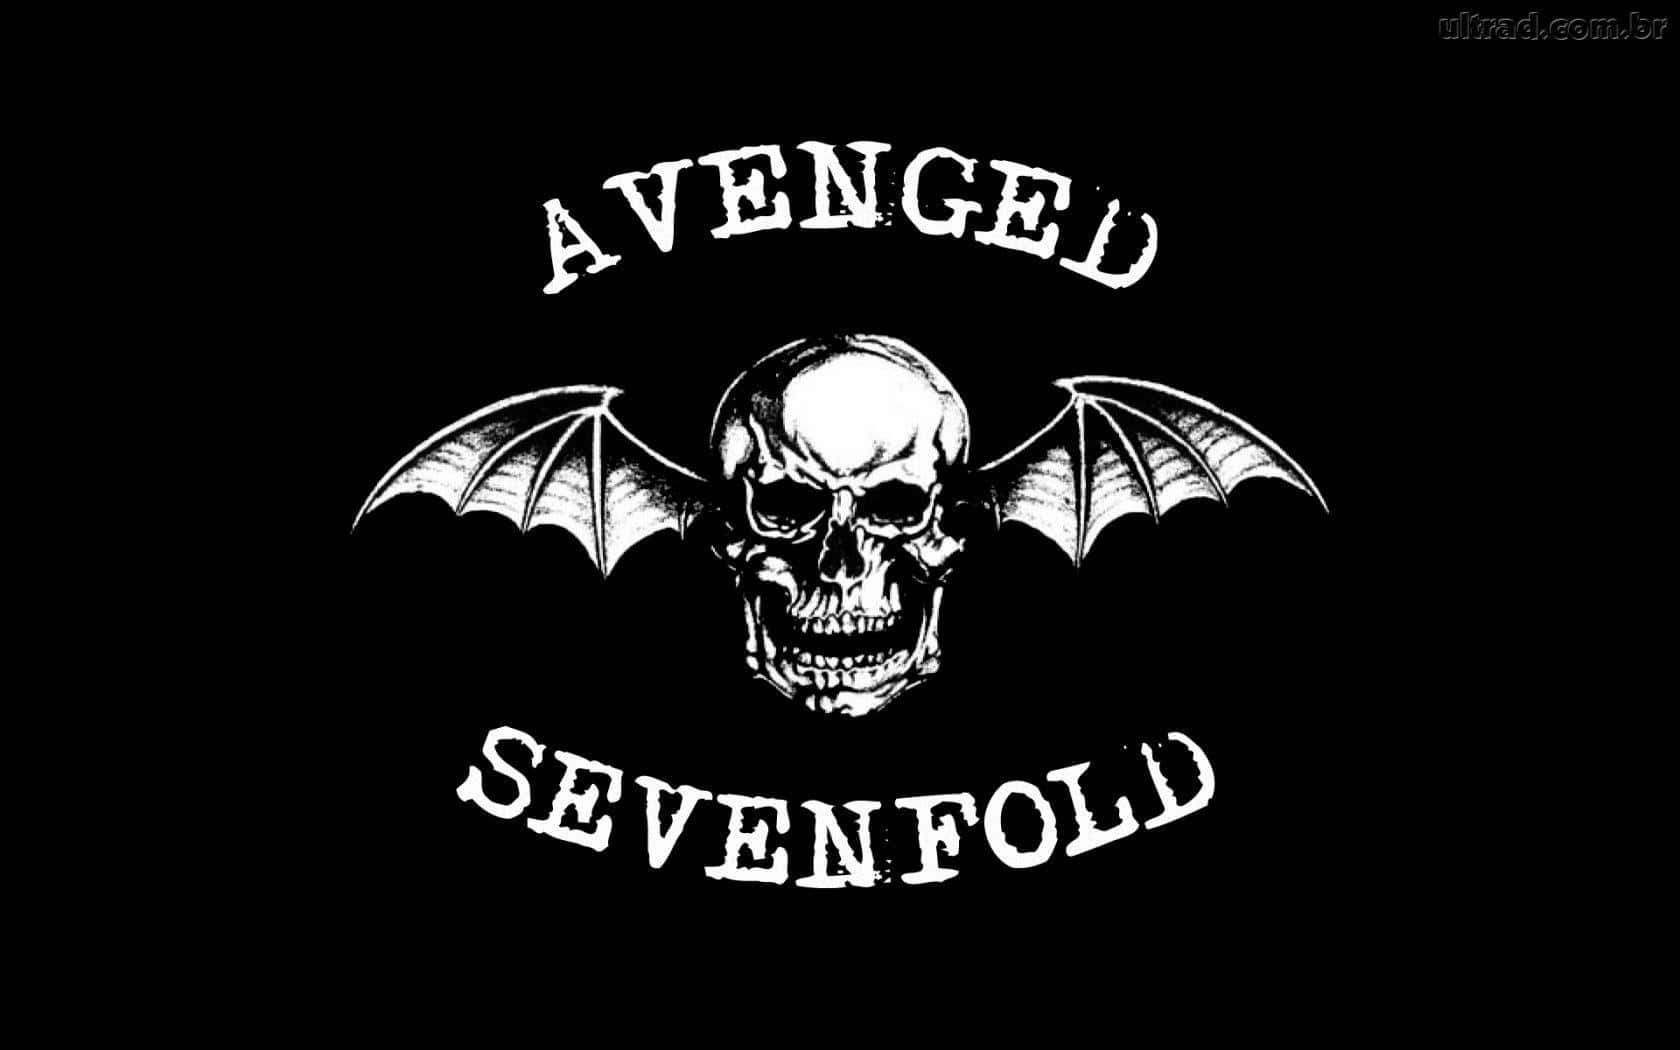 Avengedsevenfold-logo Auf Schwarzem Hintergrund. Wallpaper